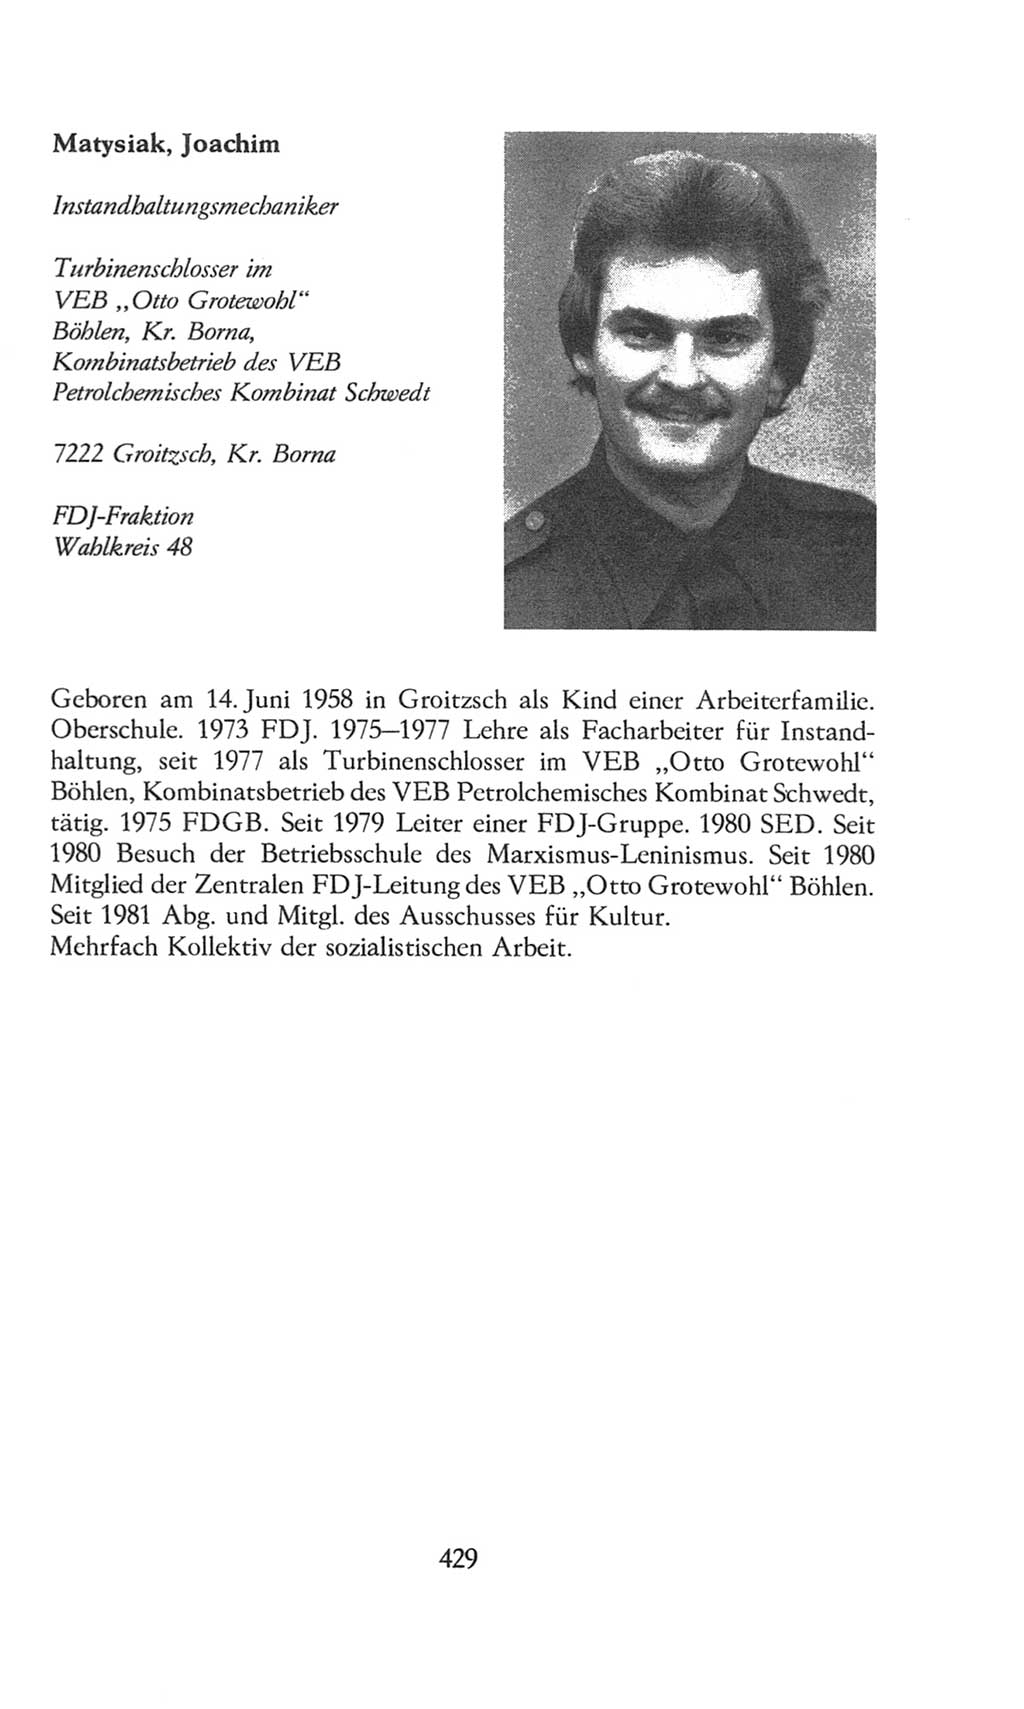 Volkskammer (VK) der Deutschen Demokratischen Republik (DDR), 8. Wahlperiode 1981-1986, Seite 429 (VK. DDR 8. WP. 1981-1986, S. 429)